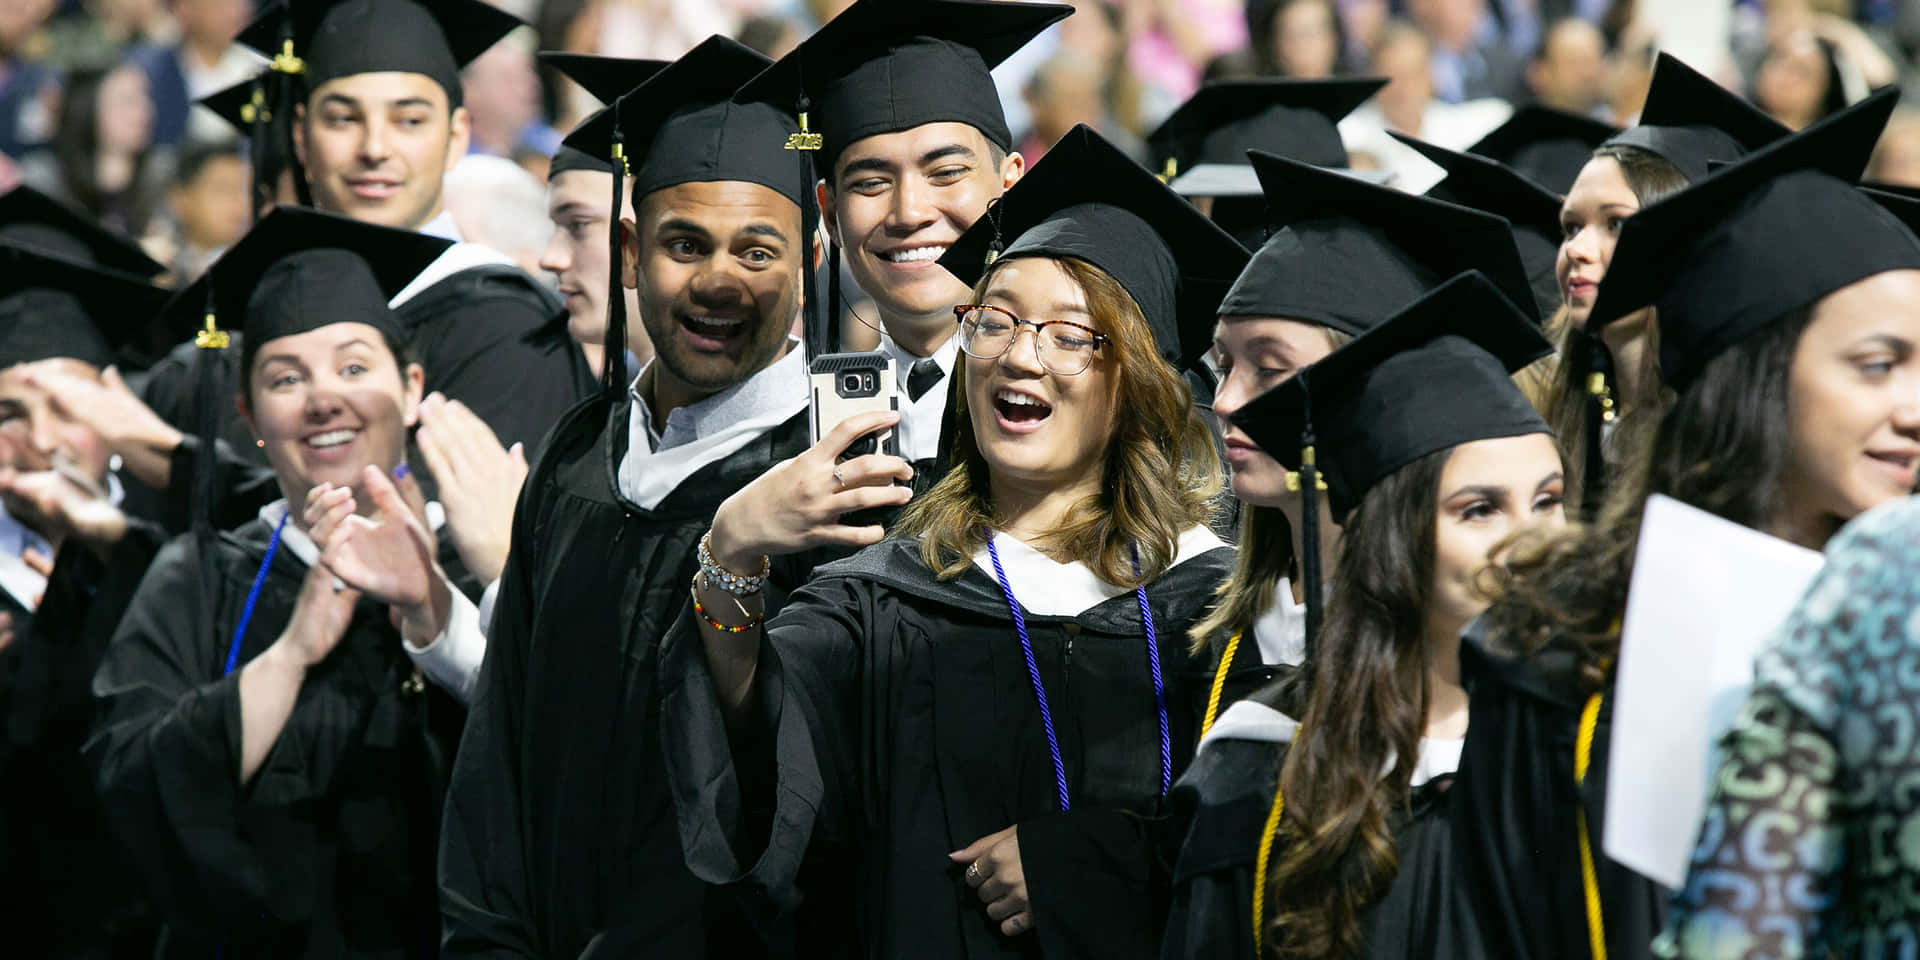 Einegruppe Von Absolventen Macht Ein Selfie.